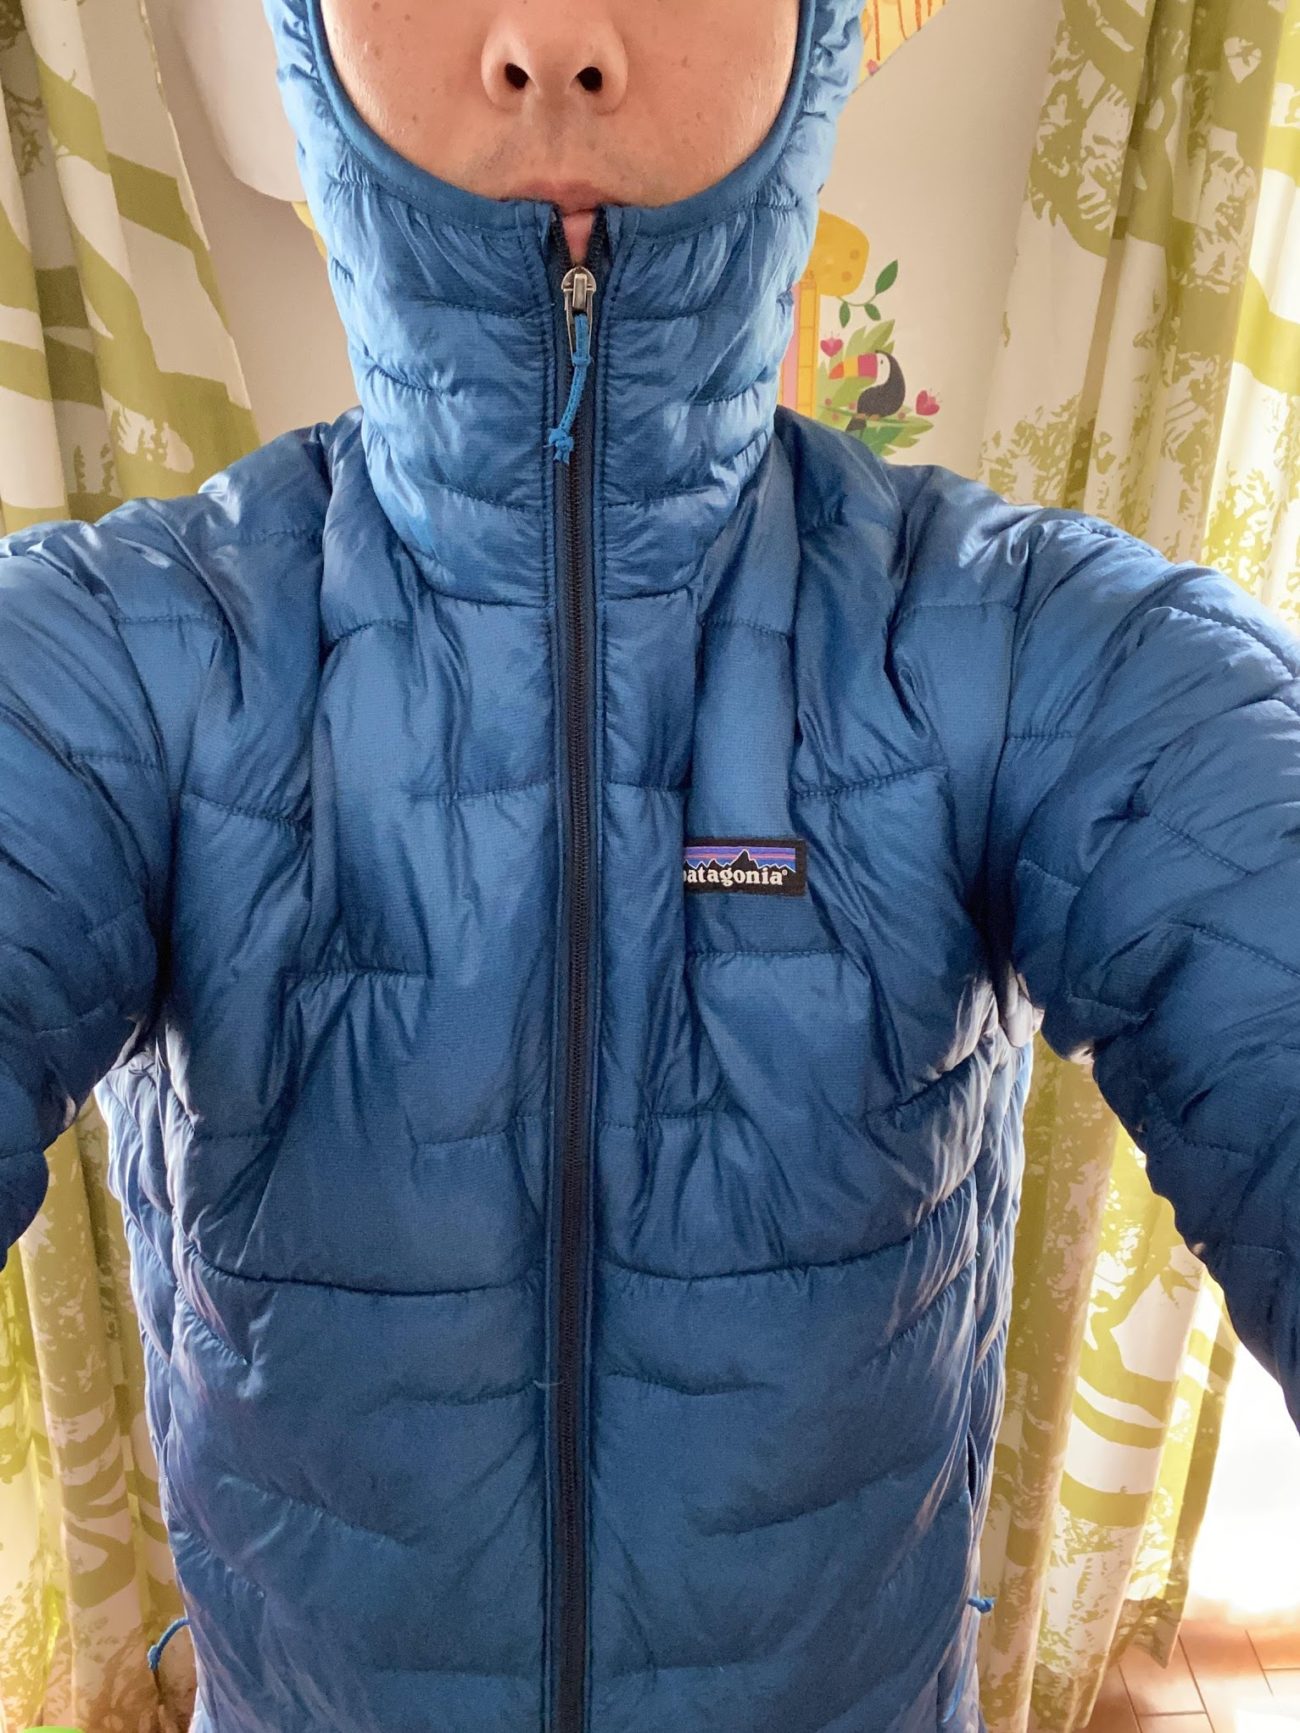 インサレー】 patagonia - 専用 パタゴニア マイクロパフジャケット 